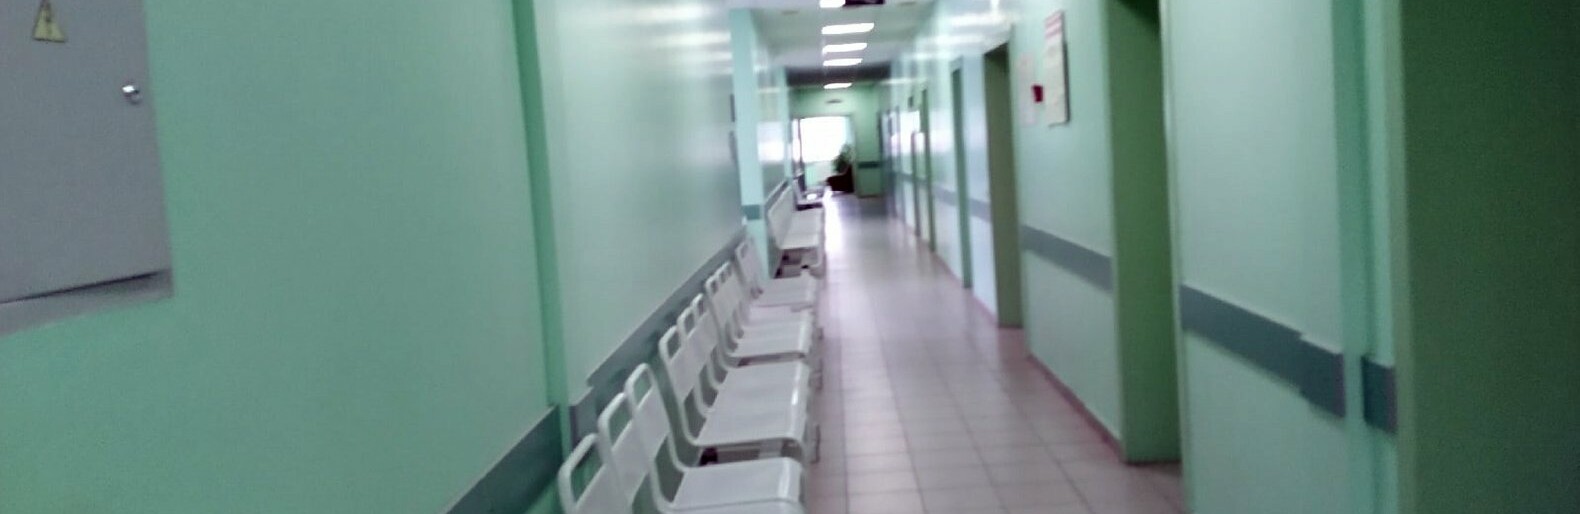 Пациенты чаще всего жалуются на поликлинику Белгорода и окружную больницу Старого Оскола